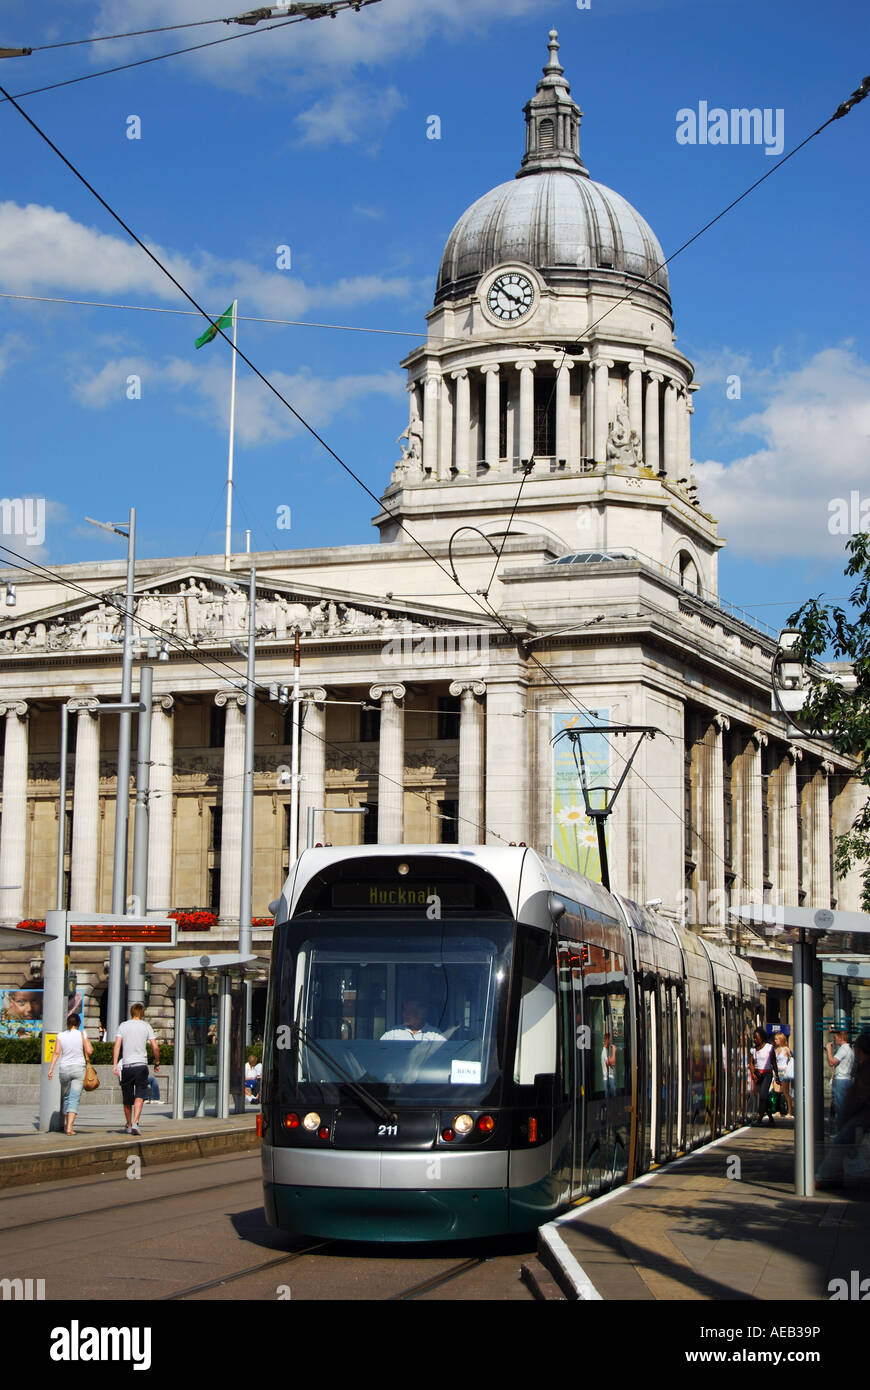 Nottingham Express Transit train, Place du Vieux Marché, Nottingham, Nottinghamshire, Angleterre, Royaume-Uni, Banque D'Images